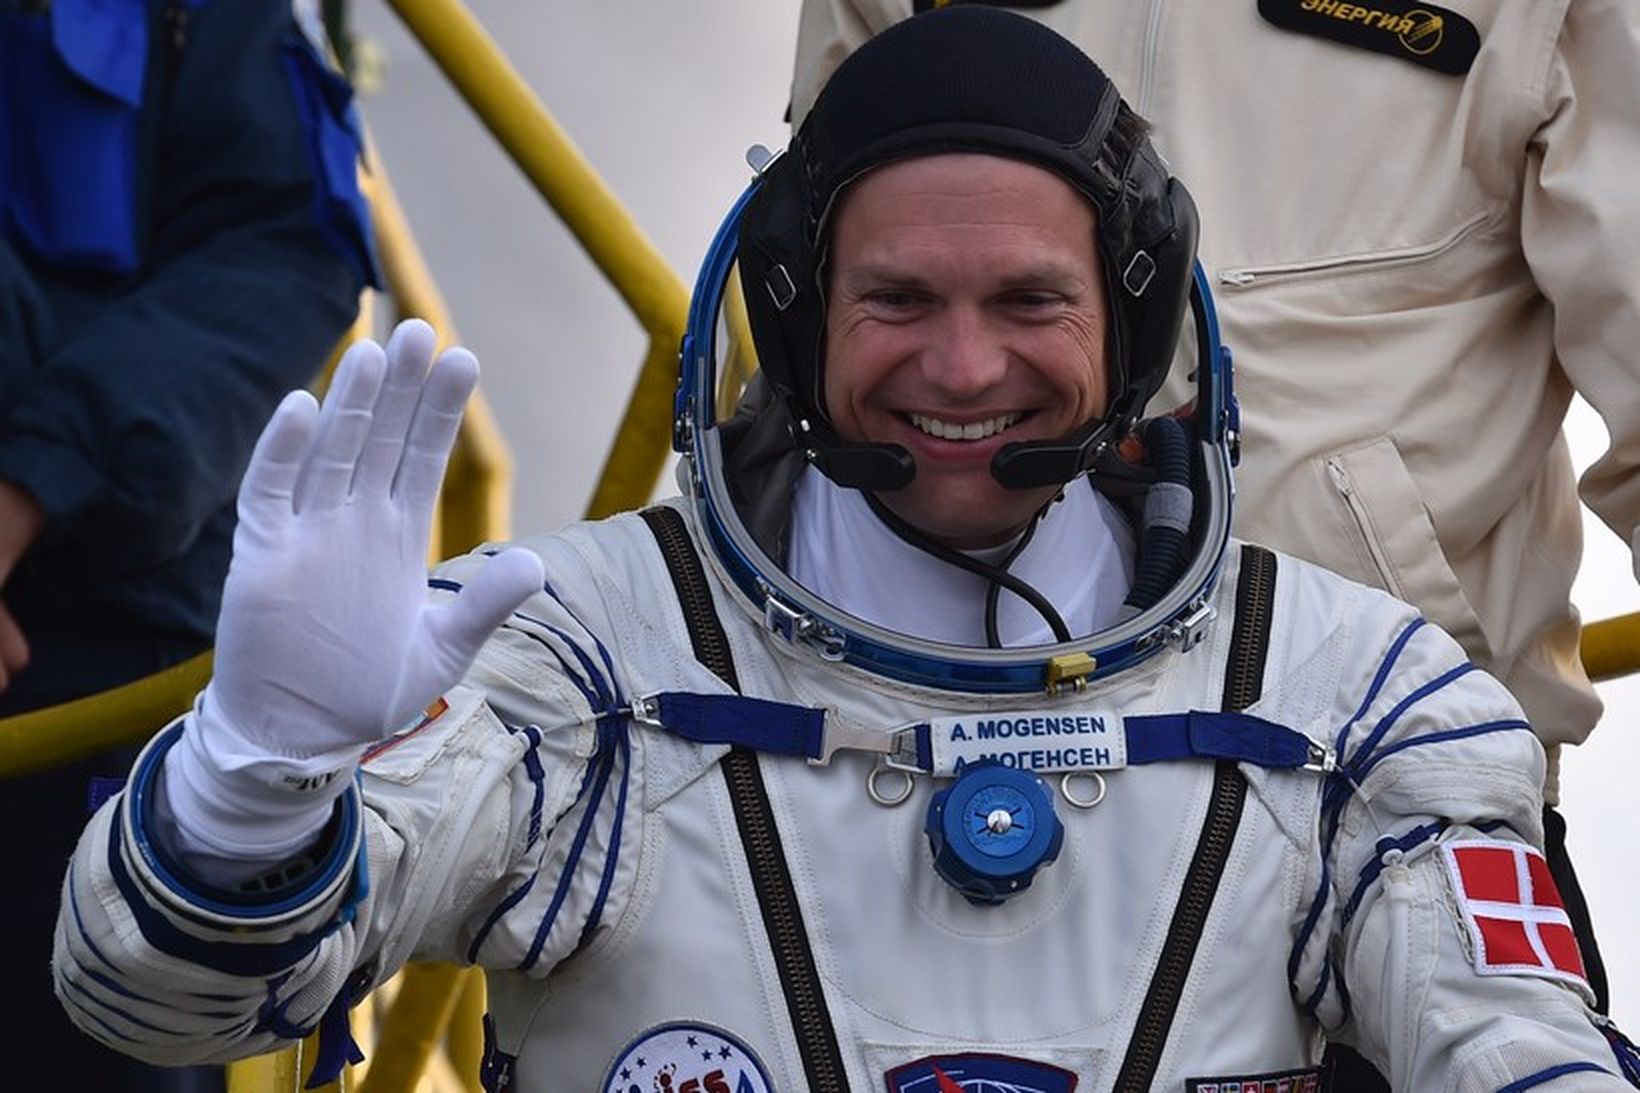 Danski geimfarinn Andreas Mogensen veifar á leiðinni í Soyuz-geimfarið sem …